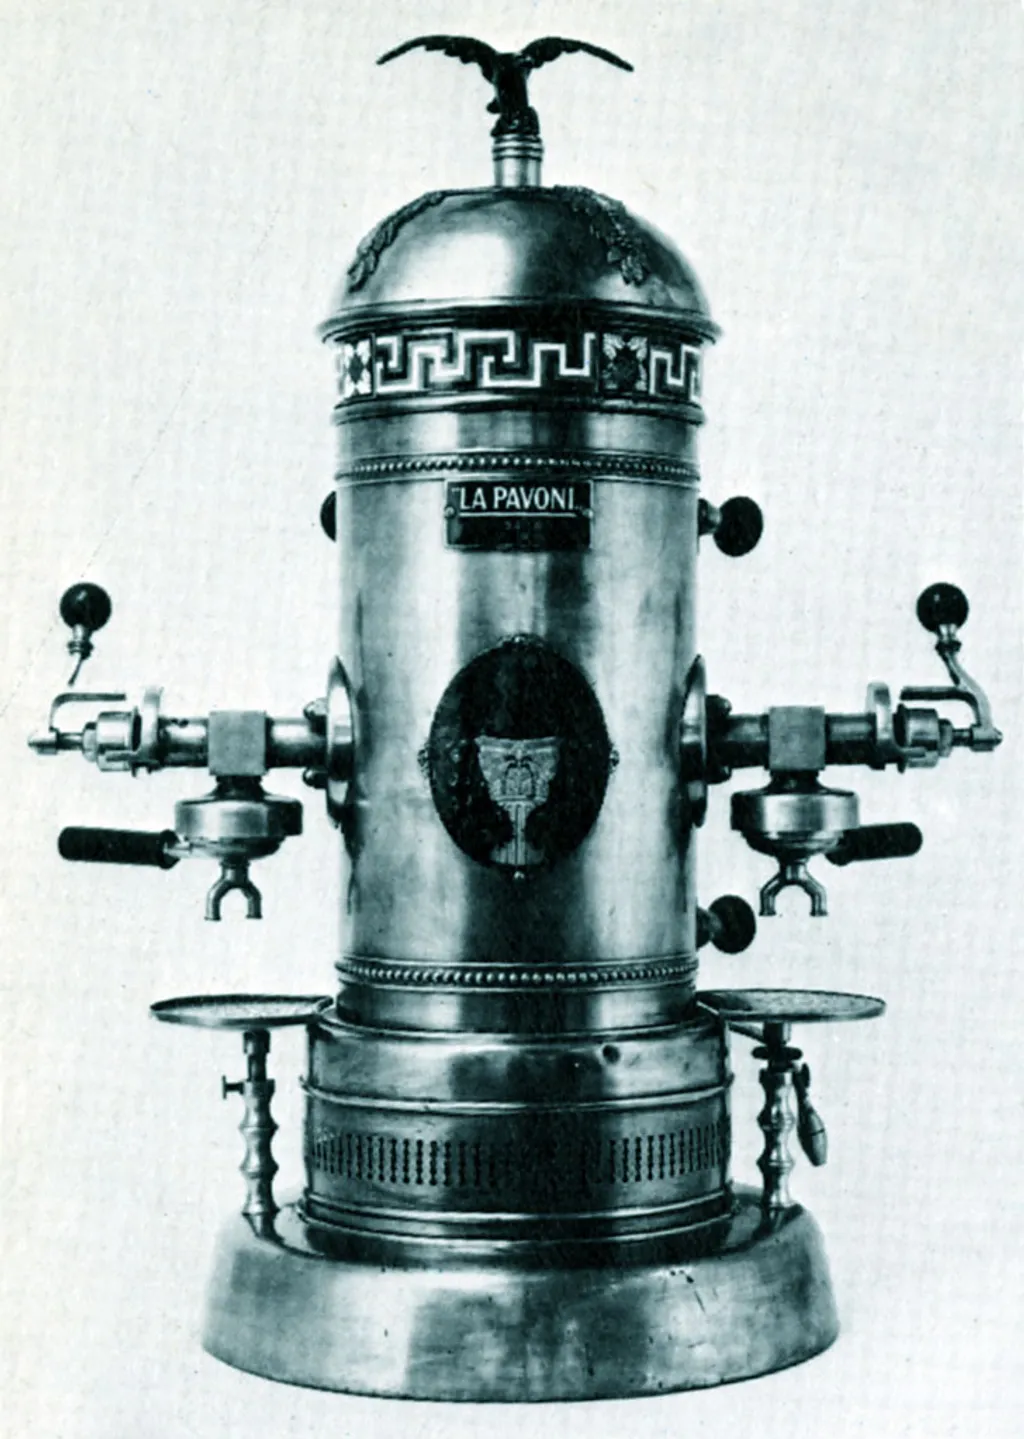 Konyhaeszközök a dédnagymamáink korából  La Pavoni  espresso machine 1910. 